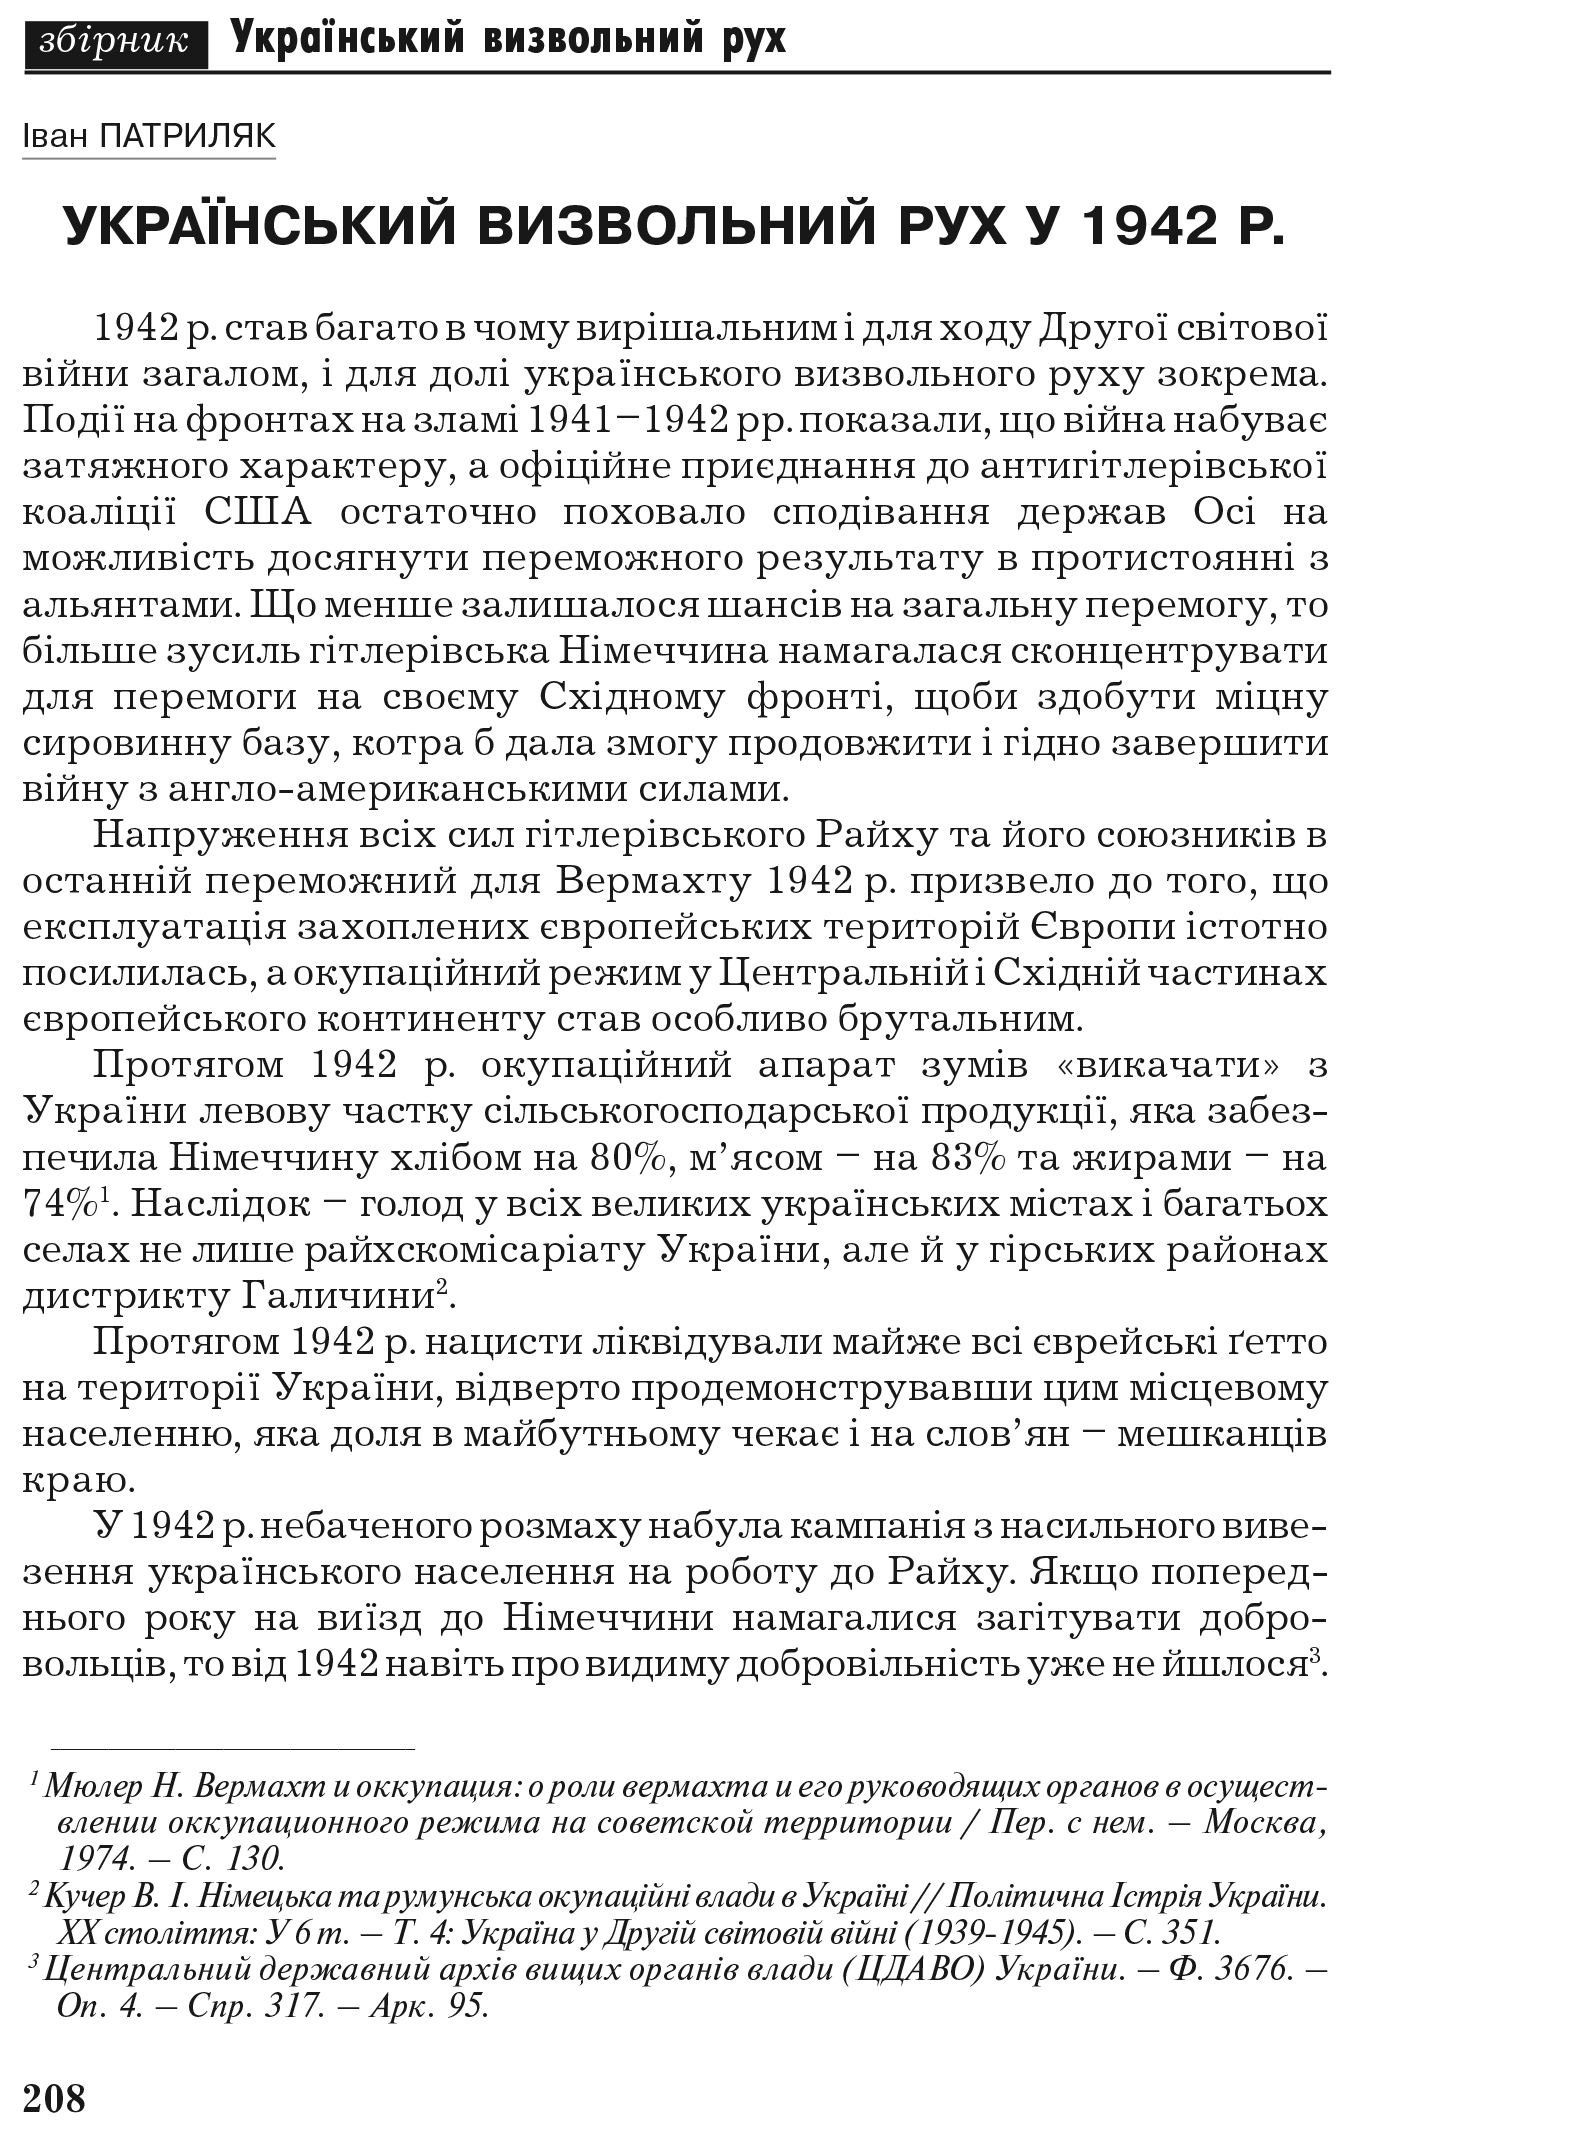 Український визвольний рух №7, ст. 208 - 231